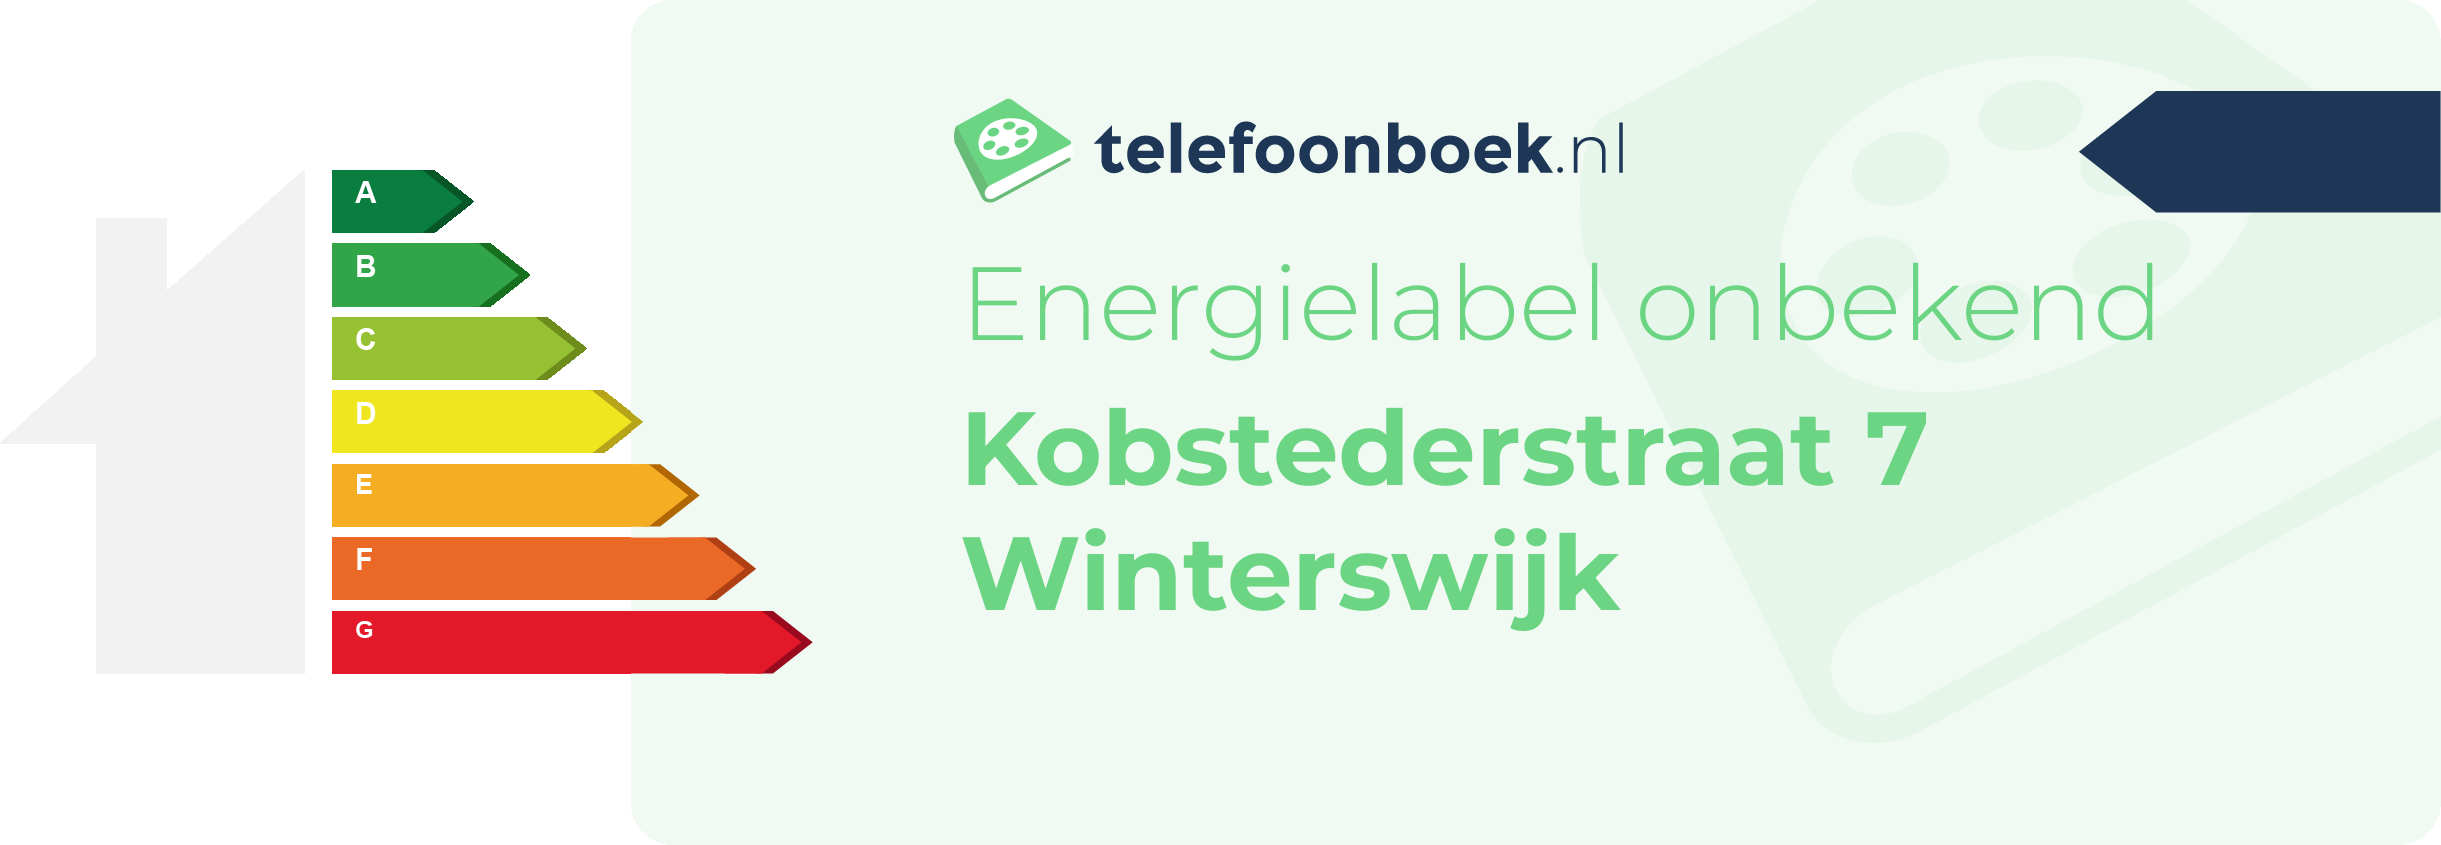 Energielabel Kobstederstraat 7 Winterswijk